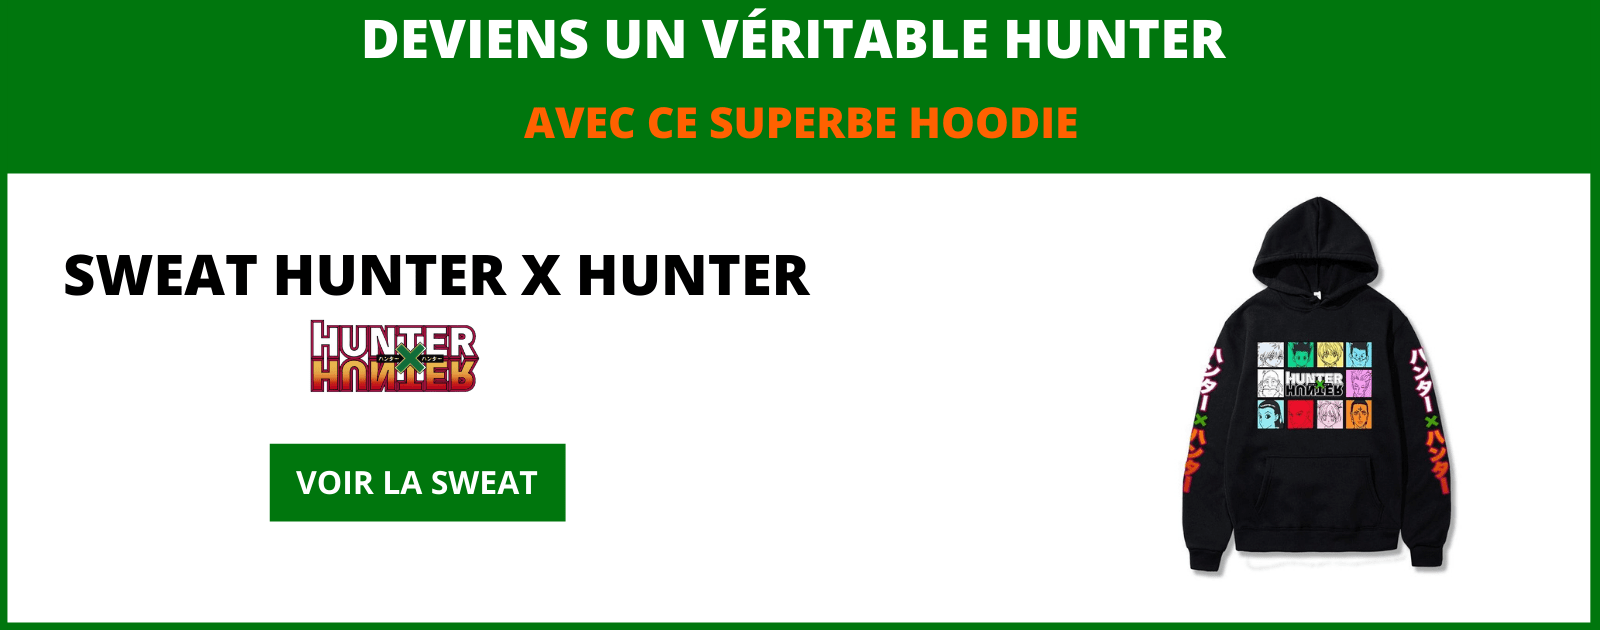 Hoodie Hunter x Hunter Stylé